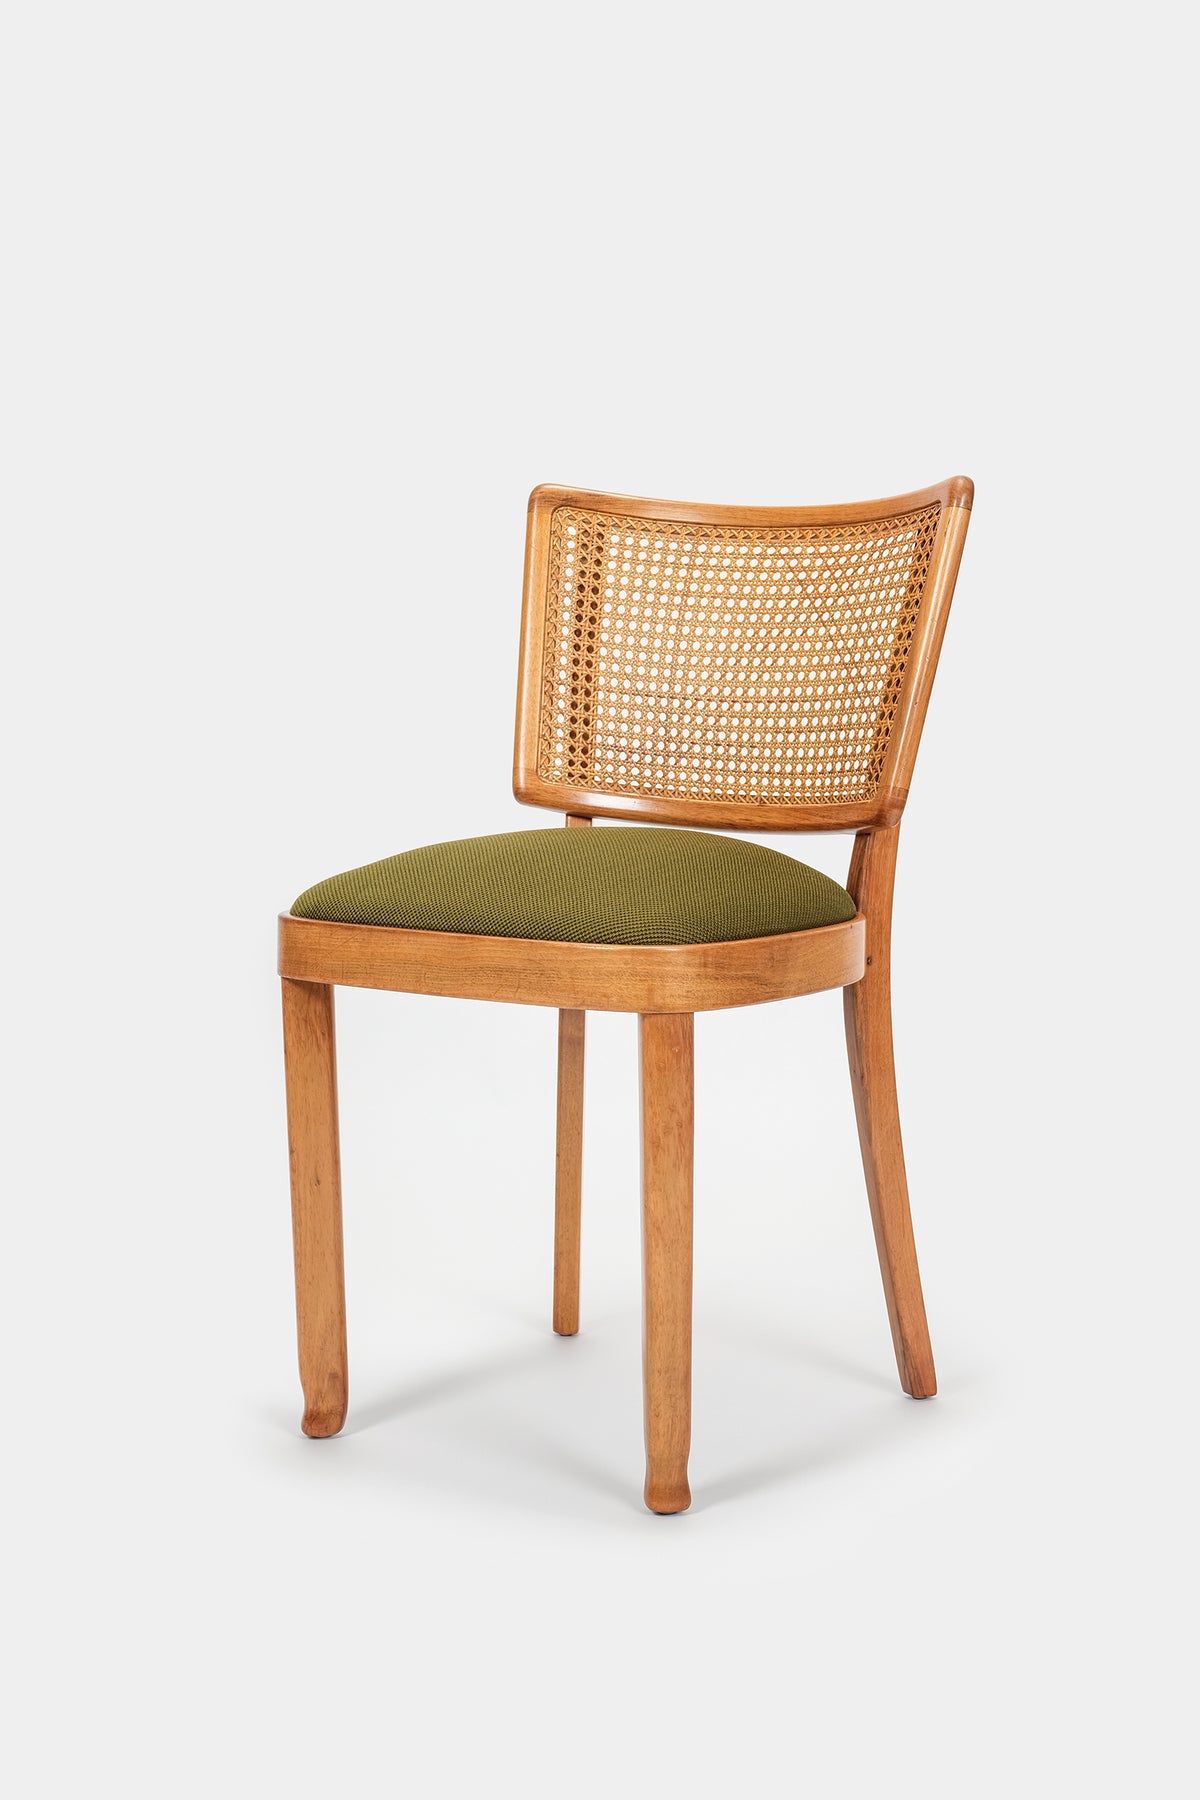 Max Ernst Haefeli and Ernst Kadler for Horgen Glarus, Walnut Chair,  40s